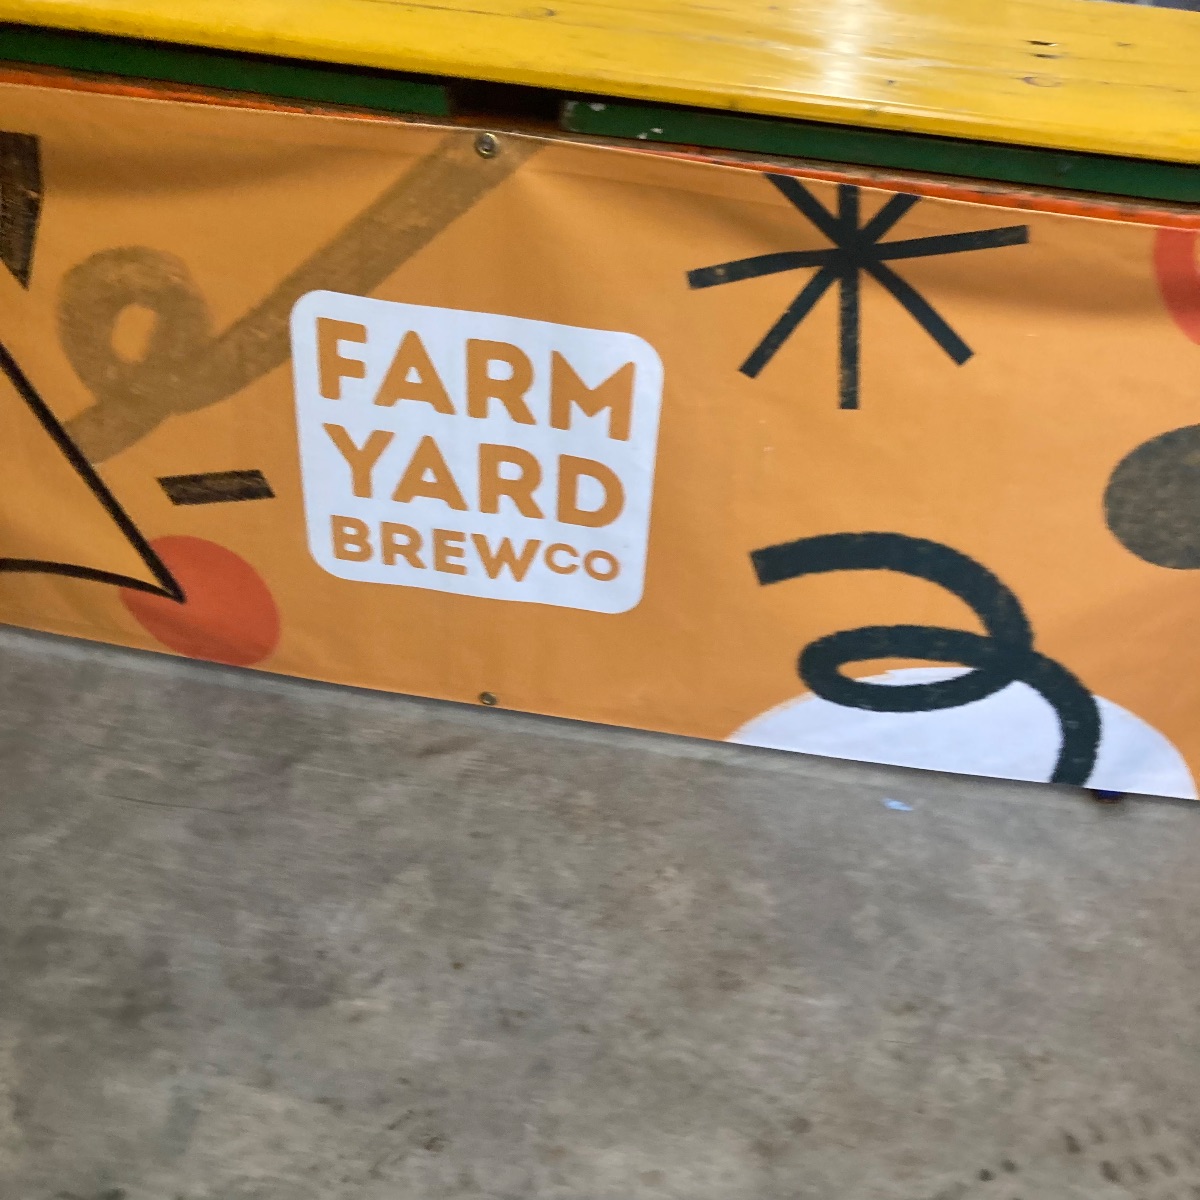 Drinks Reception at Farm Yard Brew Co